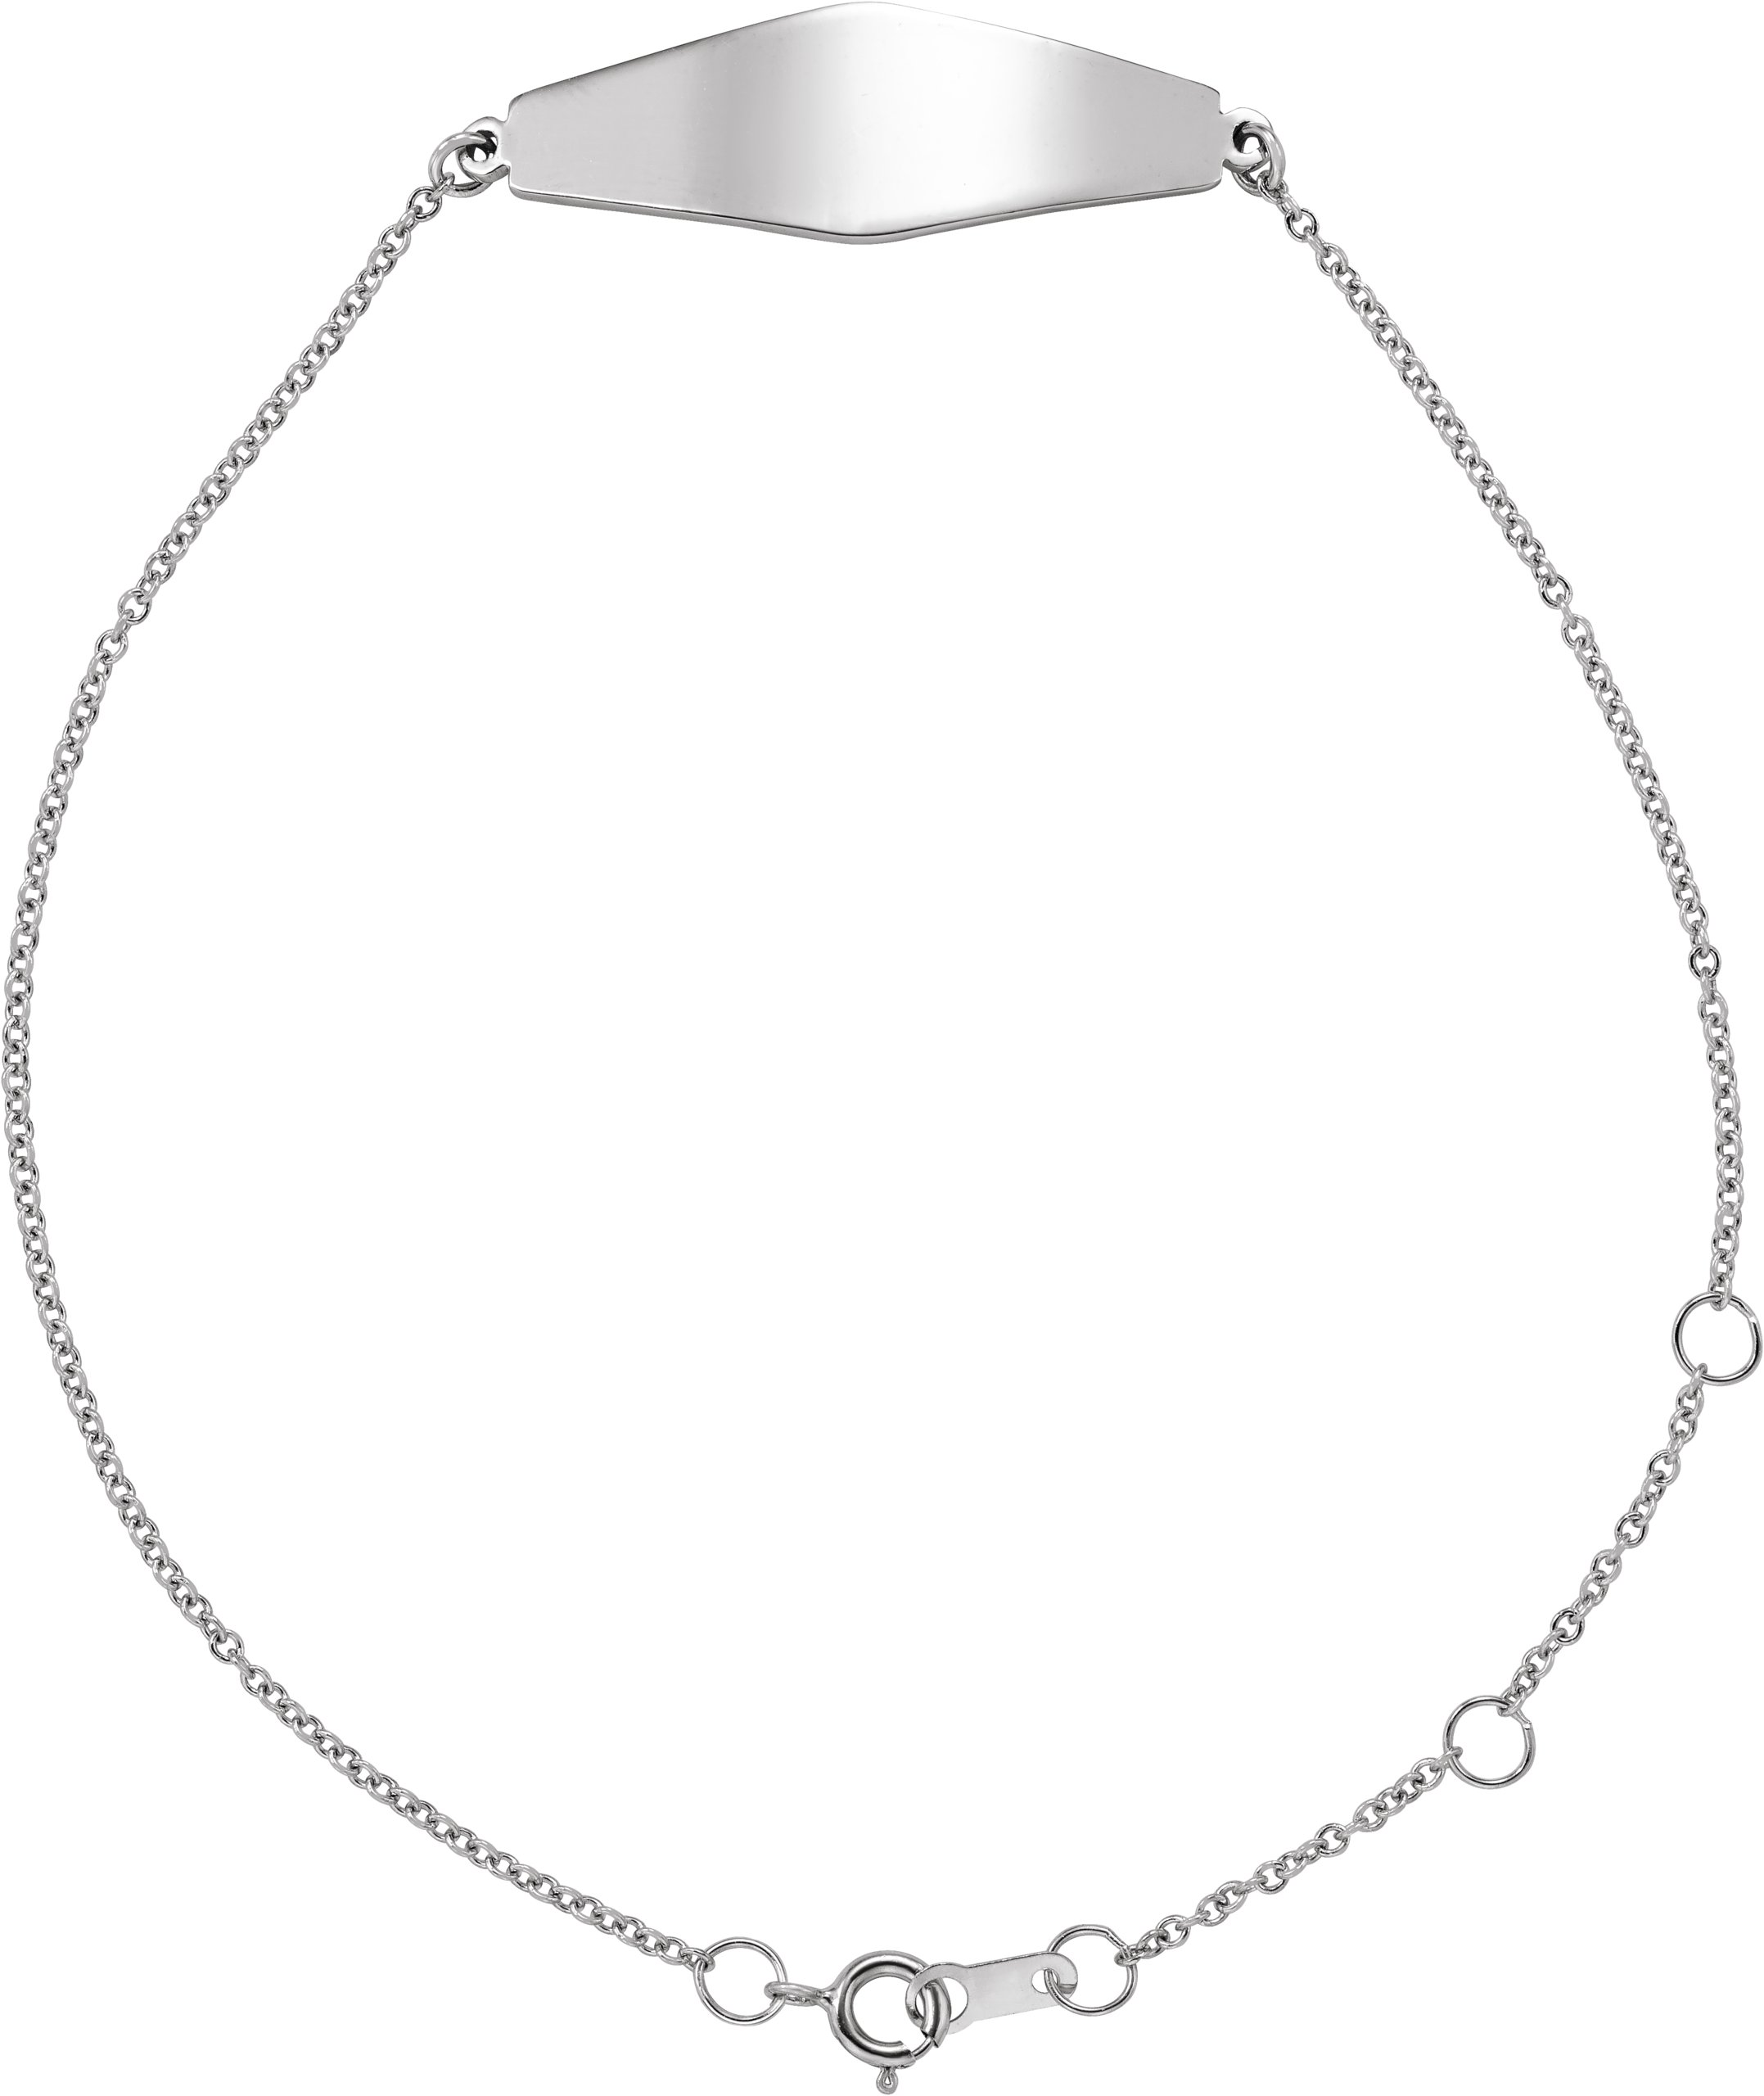 14K White Engravable Curved Bar 6 1/2-7 1/2" Bracelet